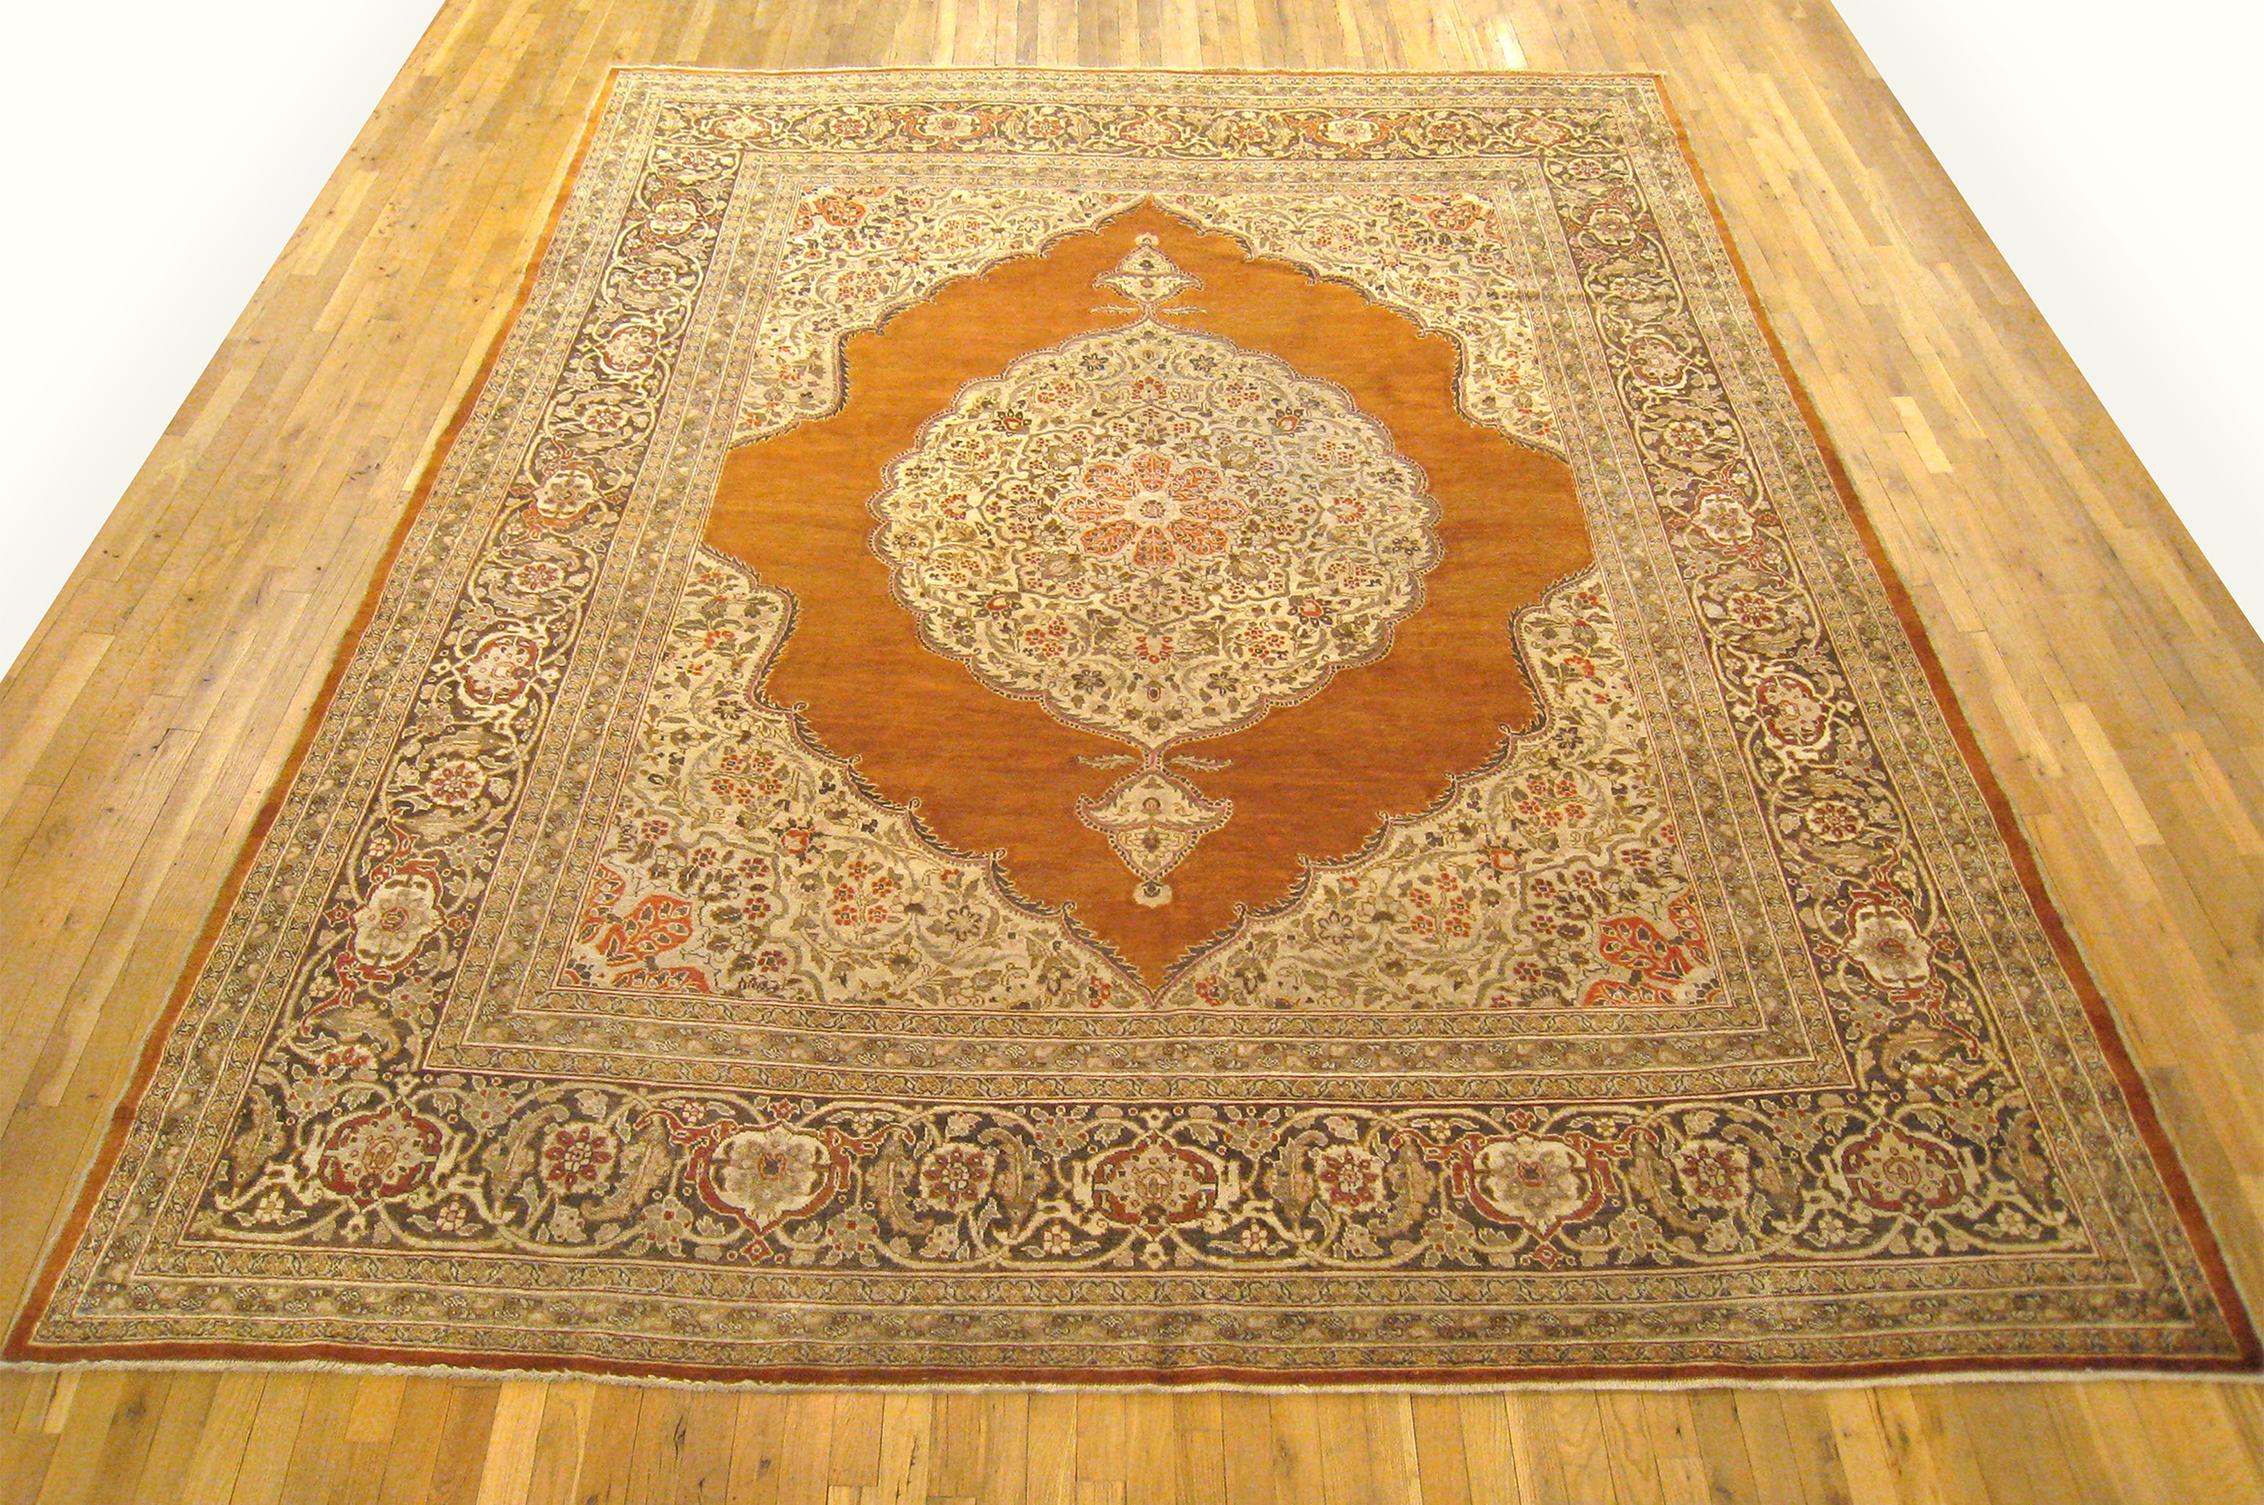 Antique Persian Tabriz oriental carpet, circa 1900, room sized.

An antique Persian Tabriz oriental carpet, circa 1900. Size: 12'9